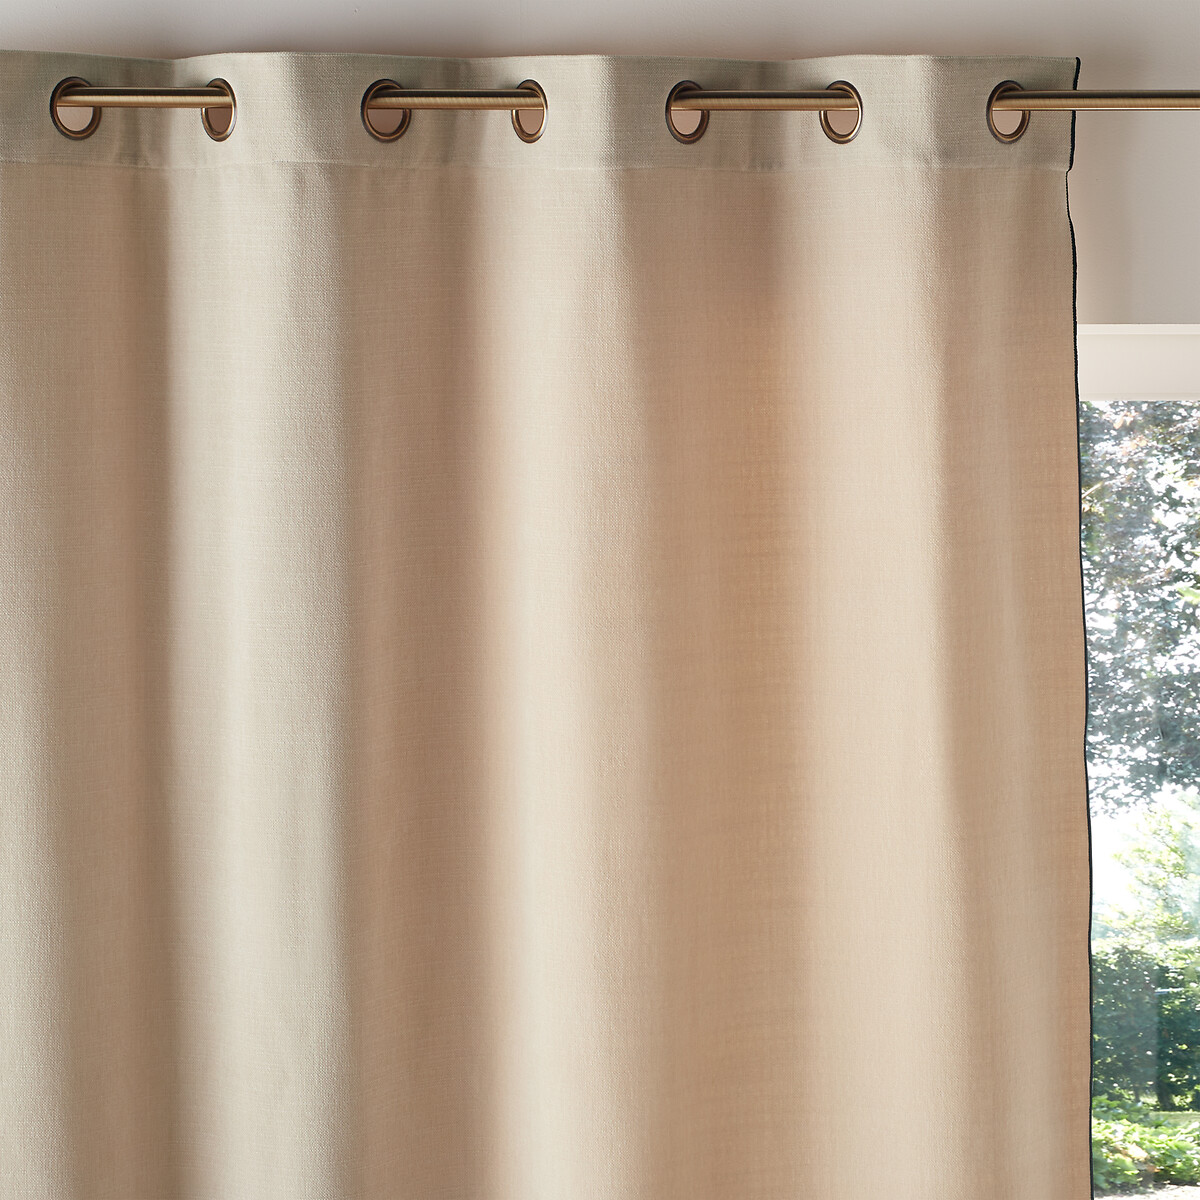 Vorhang figuera mit ösen, Redoute chenille-optik Interieurs La Redoute | La beige